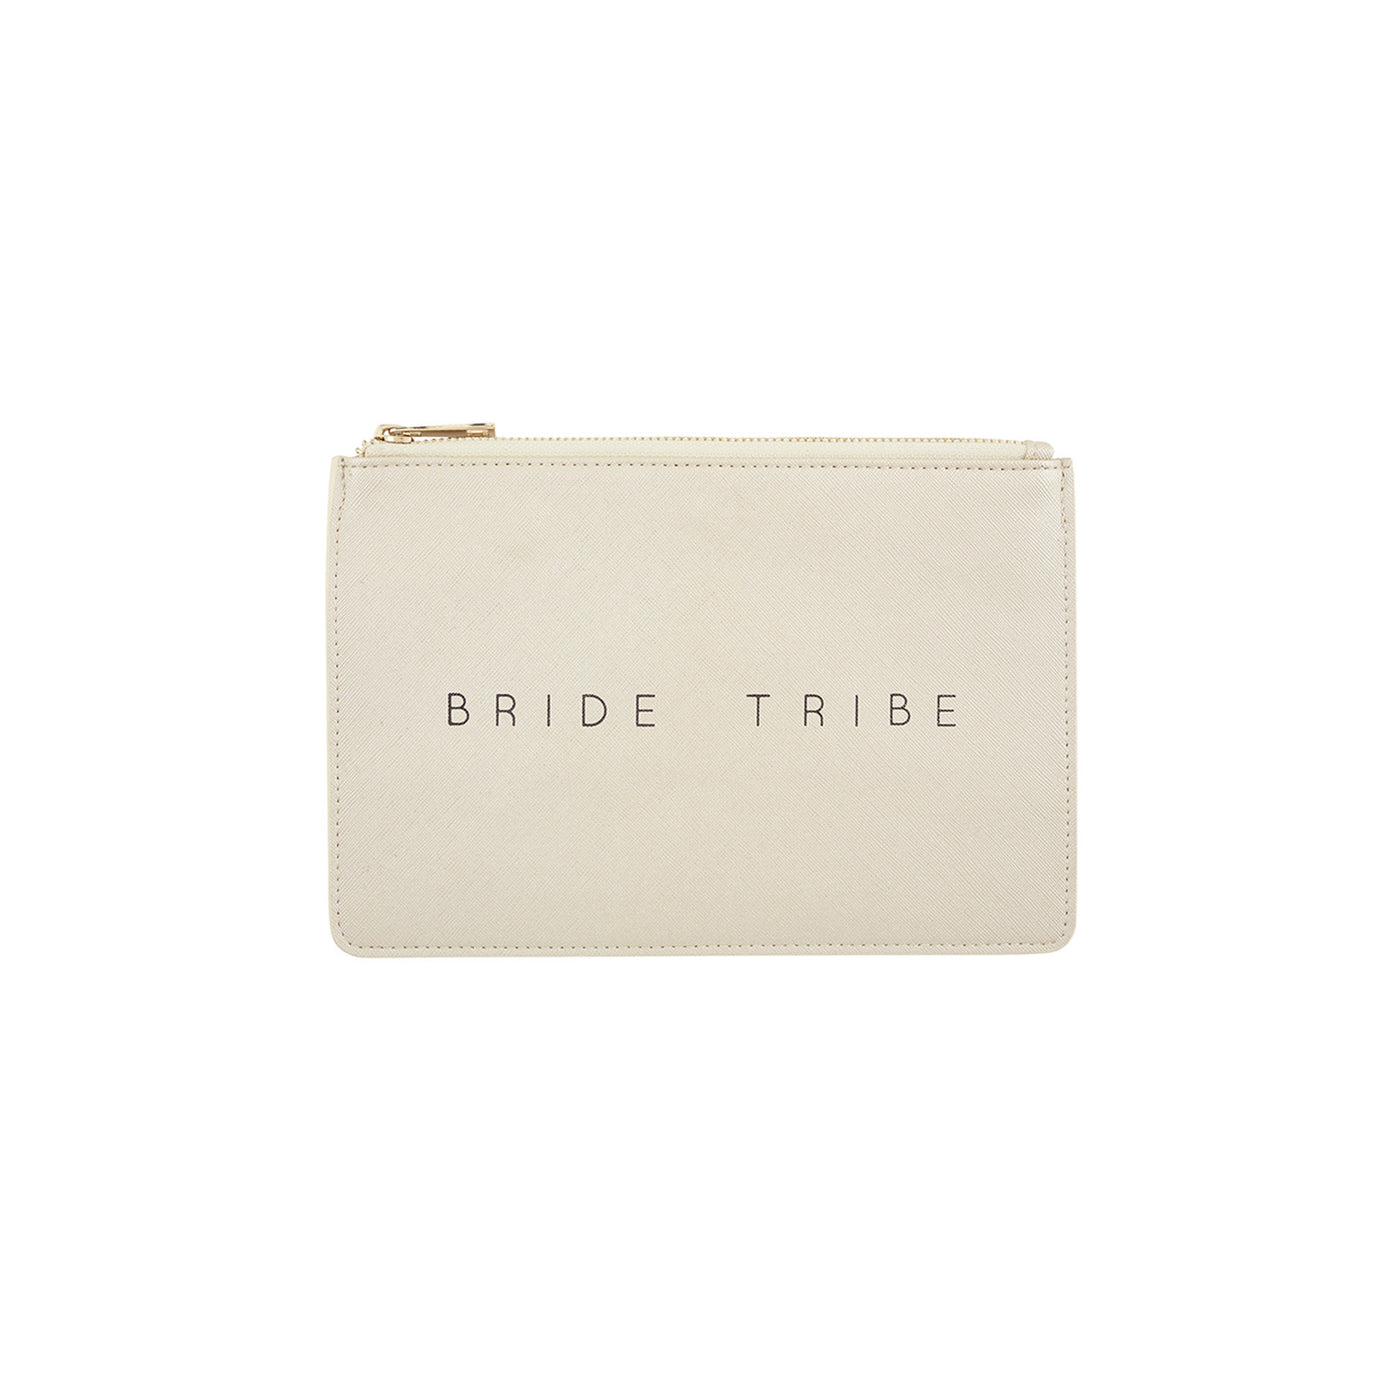 Santa Barbara Design Studio | Fashion Pouch - Bride Tribe - Metallic Silver